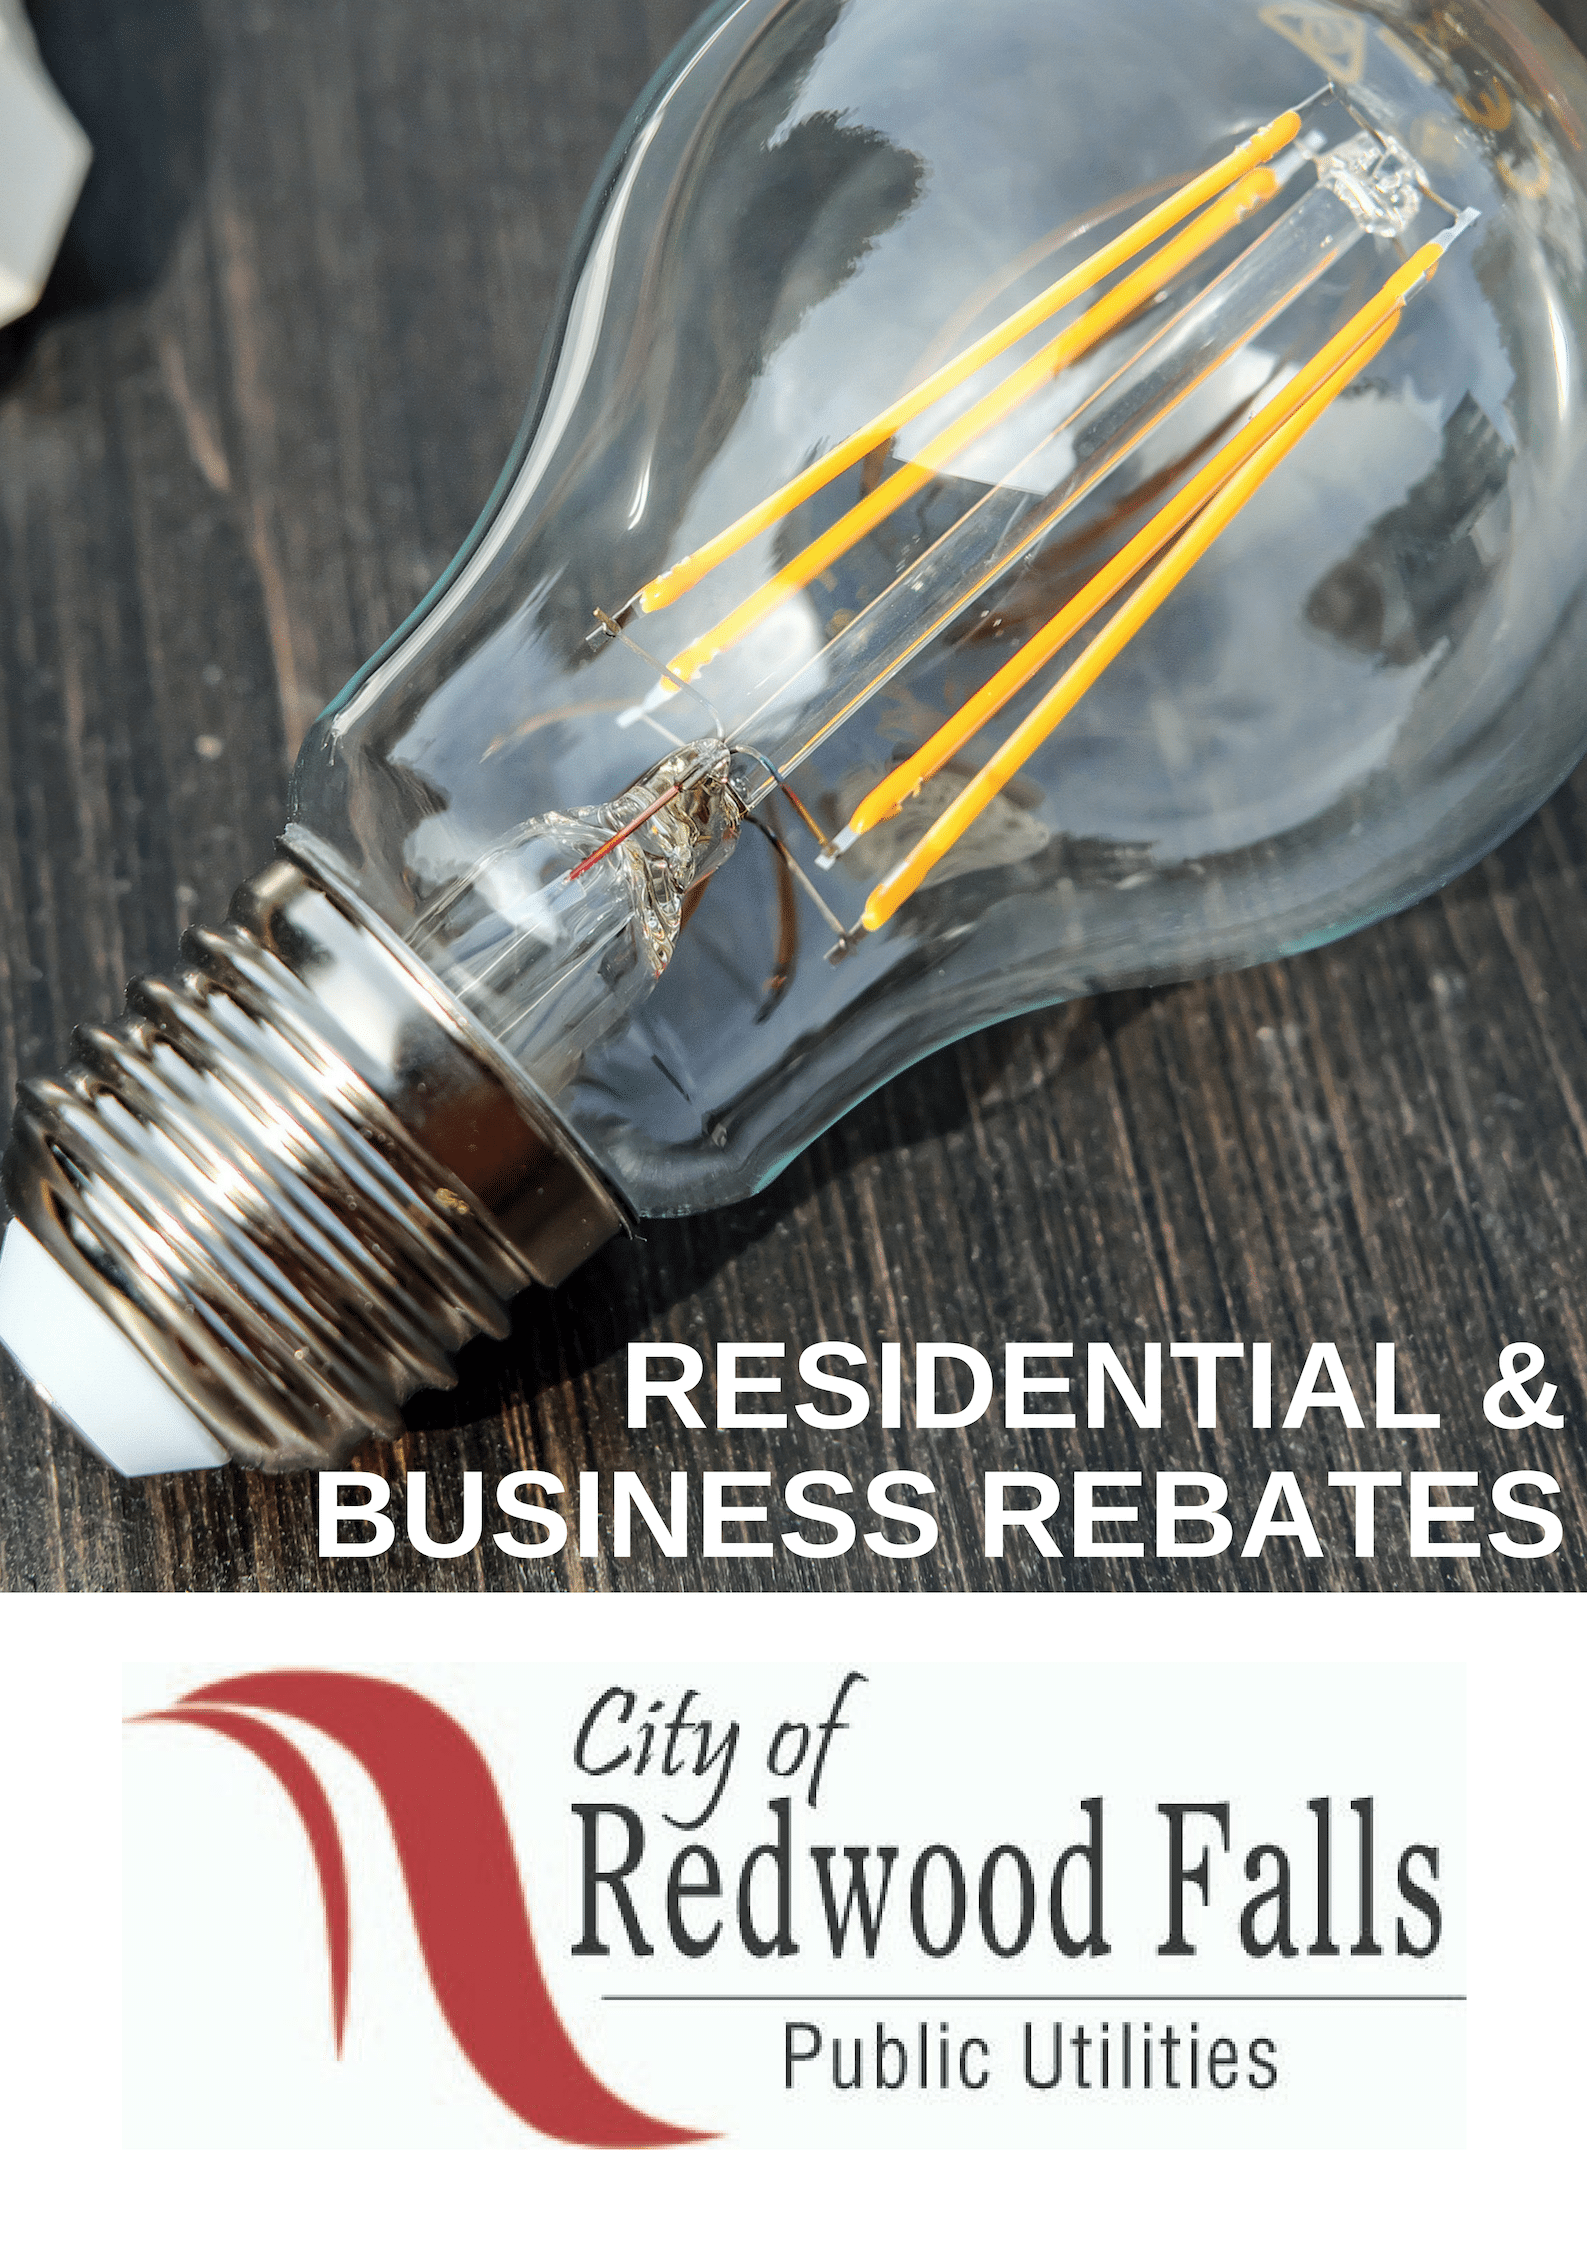 Energy Star Rebates - City of Redwood Falls